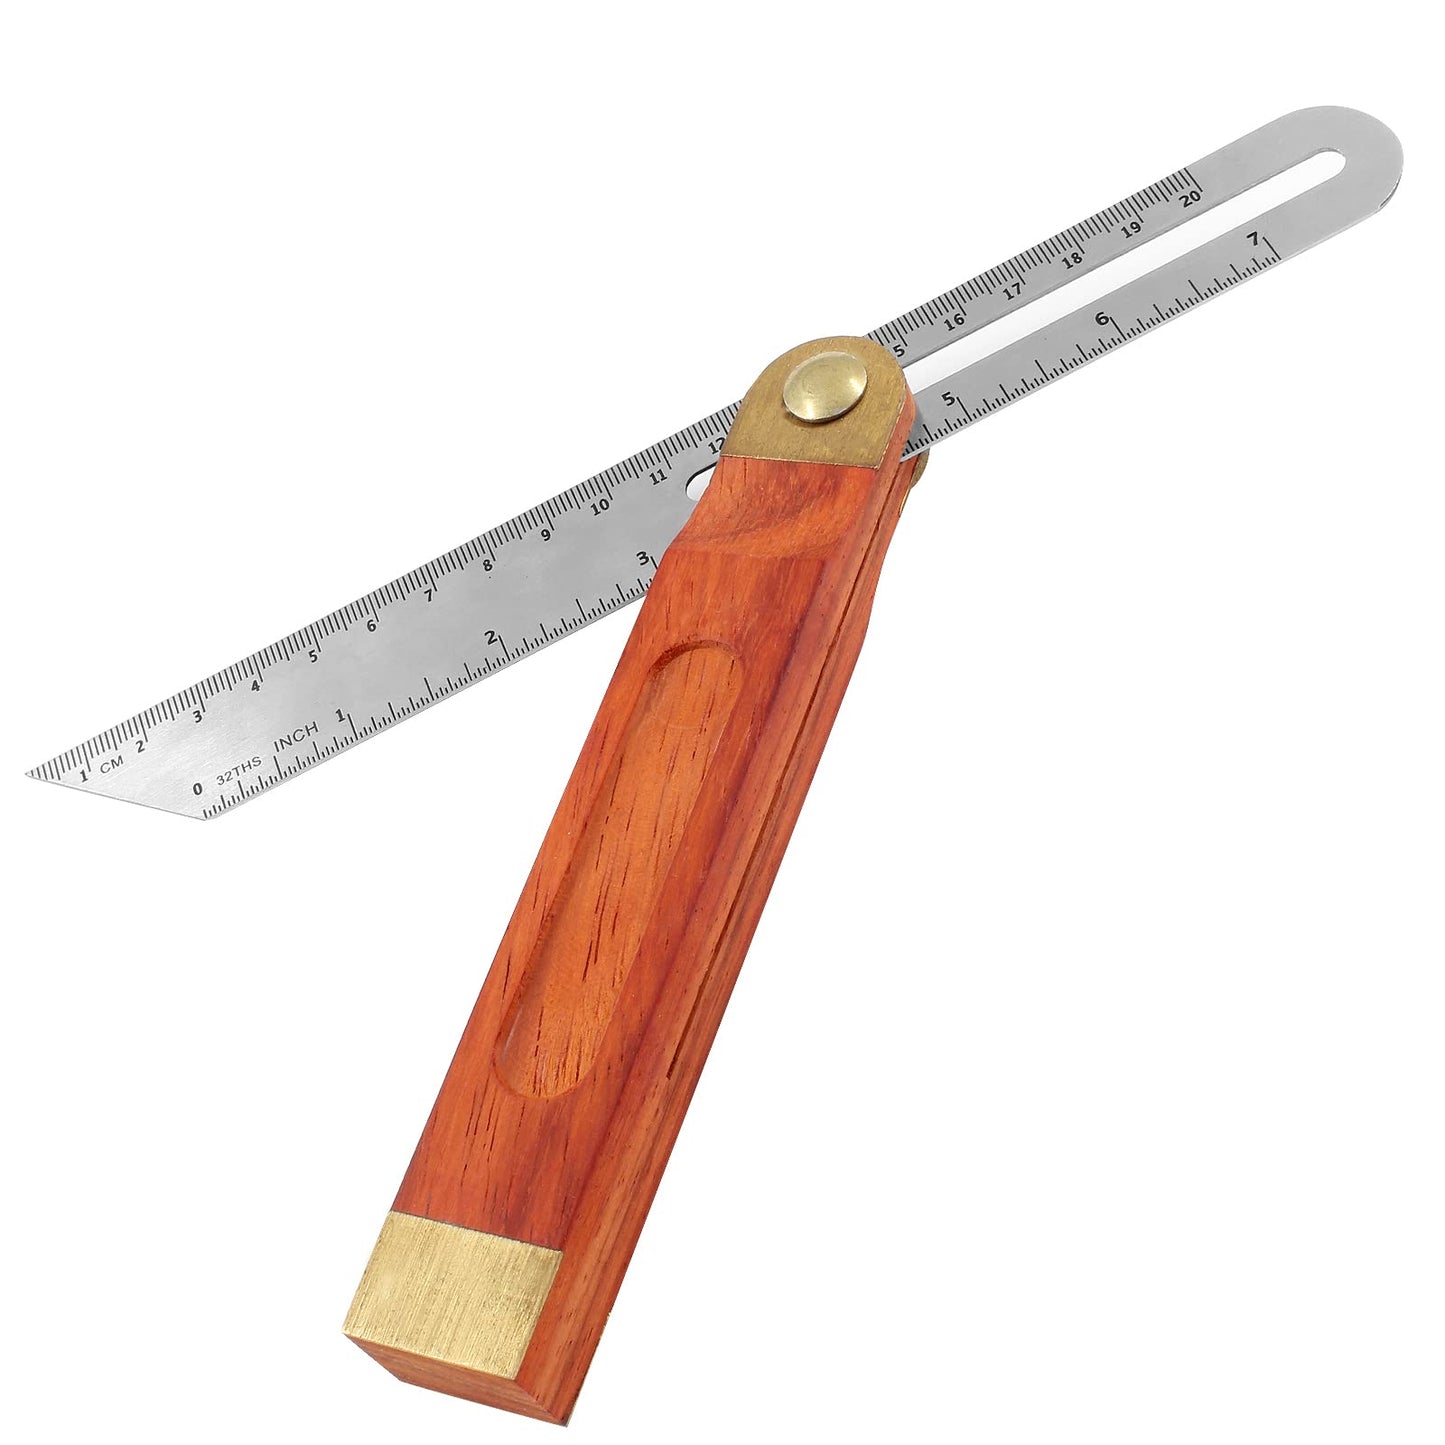 Bonsicoky 9 Inch T-Bevel Angle Finder Sliding Gauge, Adjustable Ruler Protractor with Hardwood Handle, Metric Marks